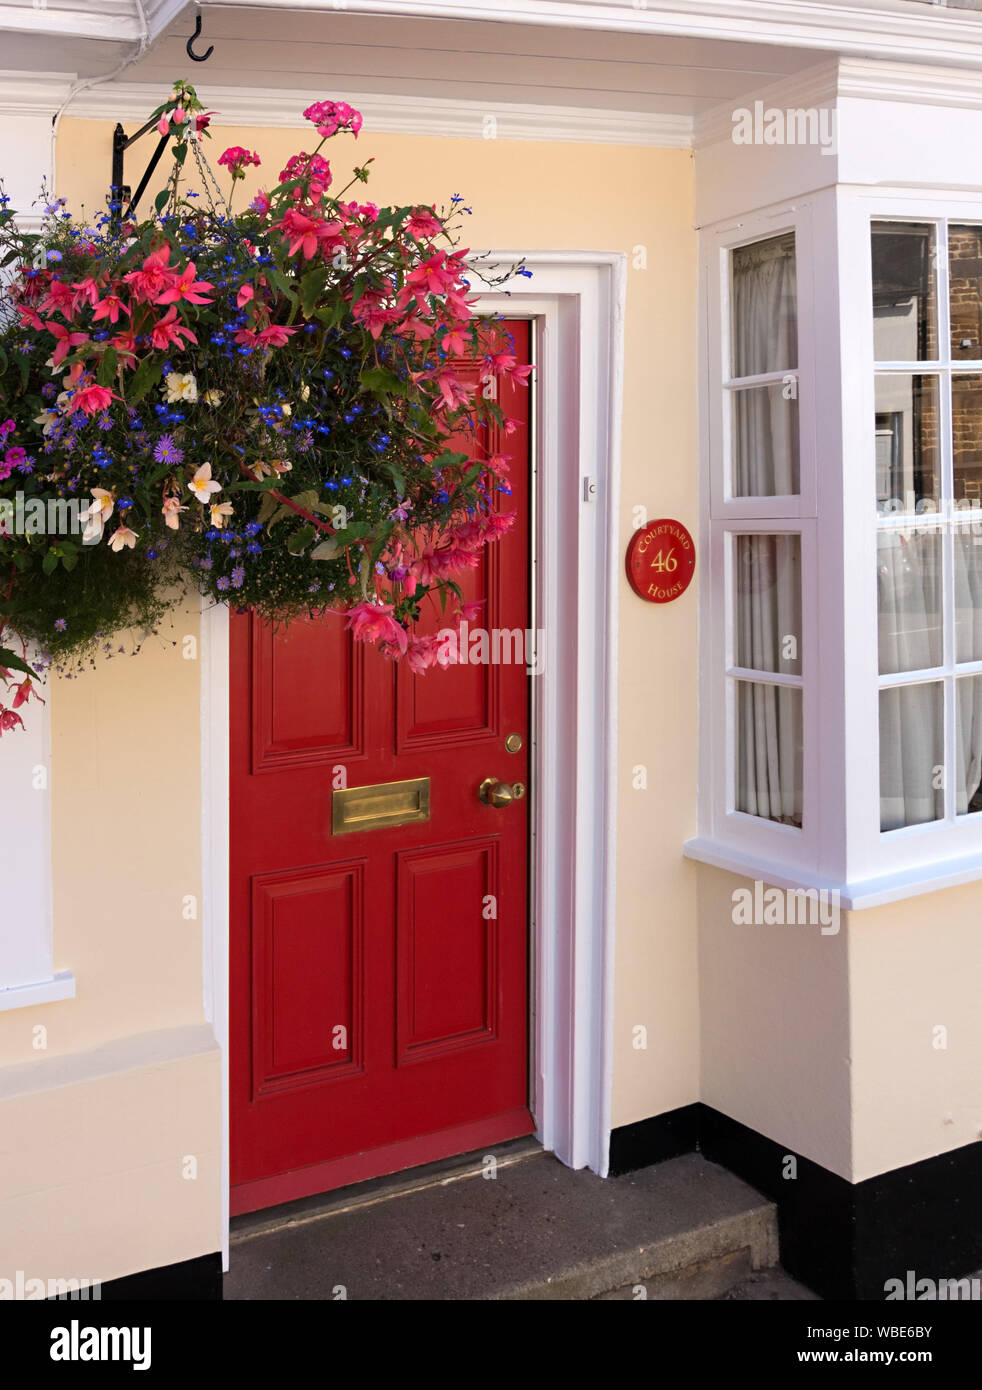 Fraîchement peint de couleur crème maison / chalet avec porte avant rouge, blanc guillotine et Hanging Basket, Uppingham, England, UK. Banque D'Images